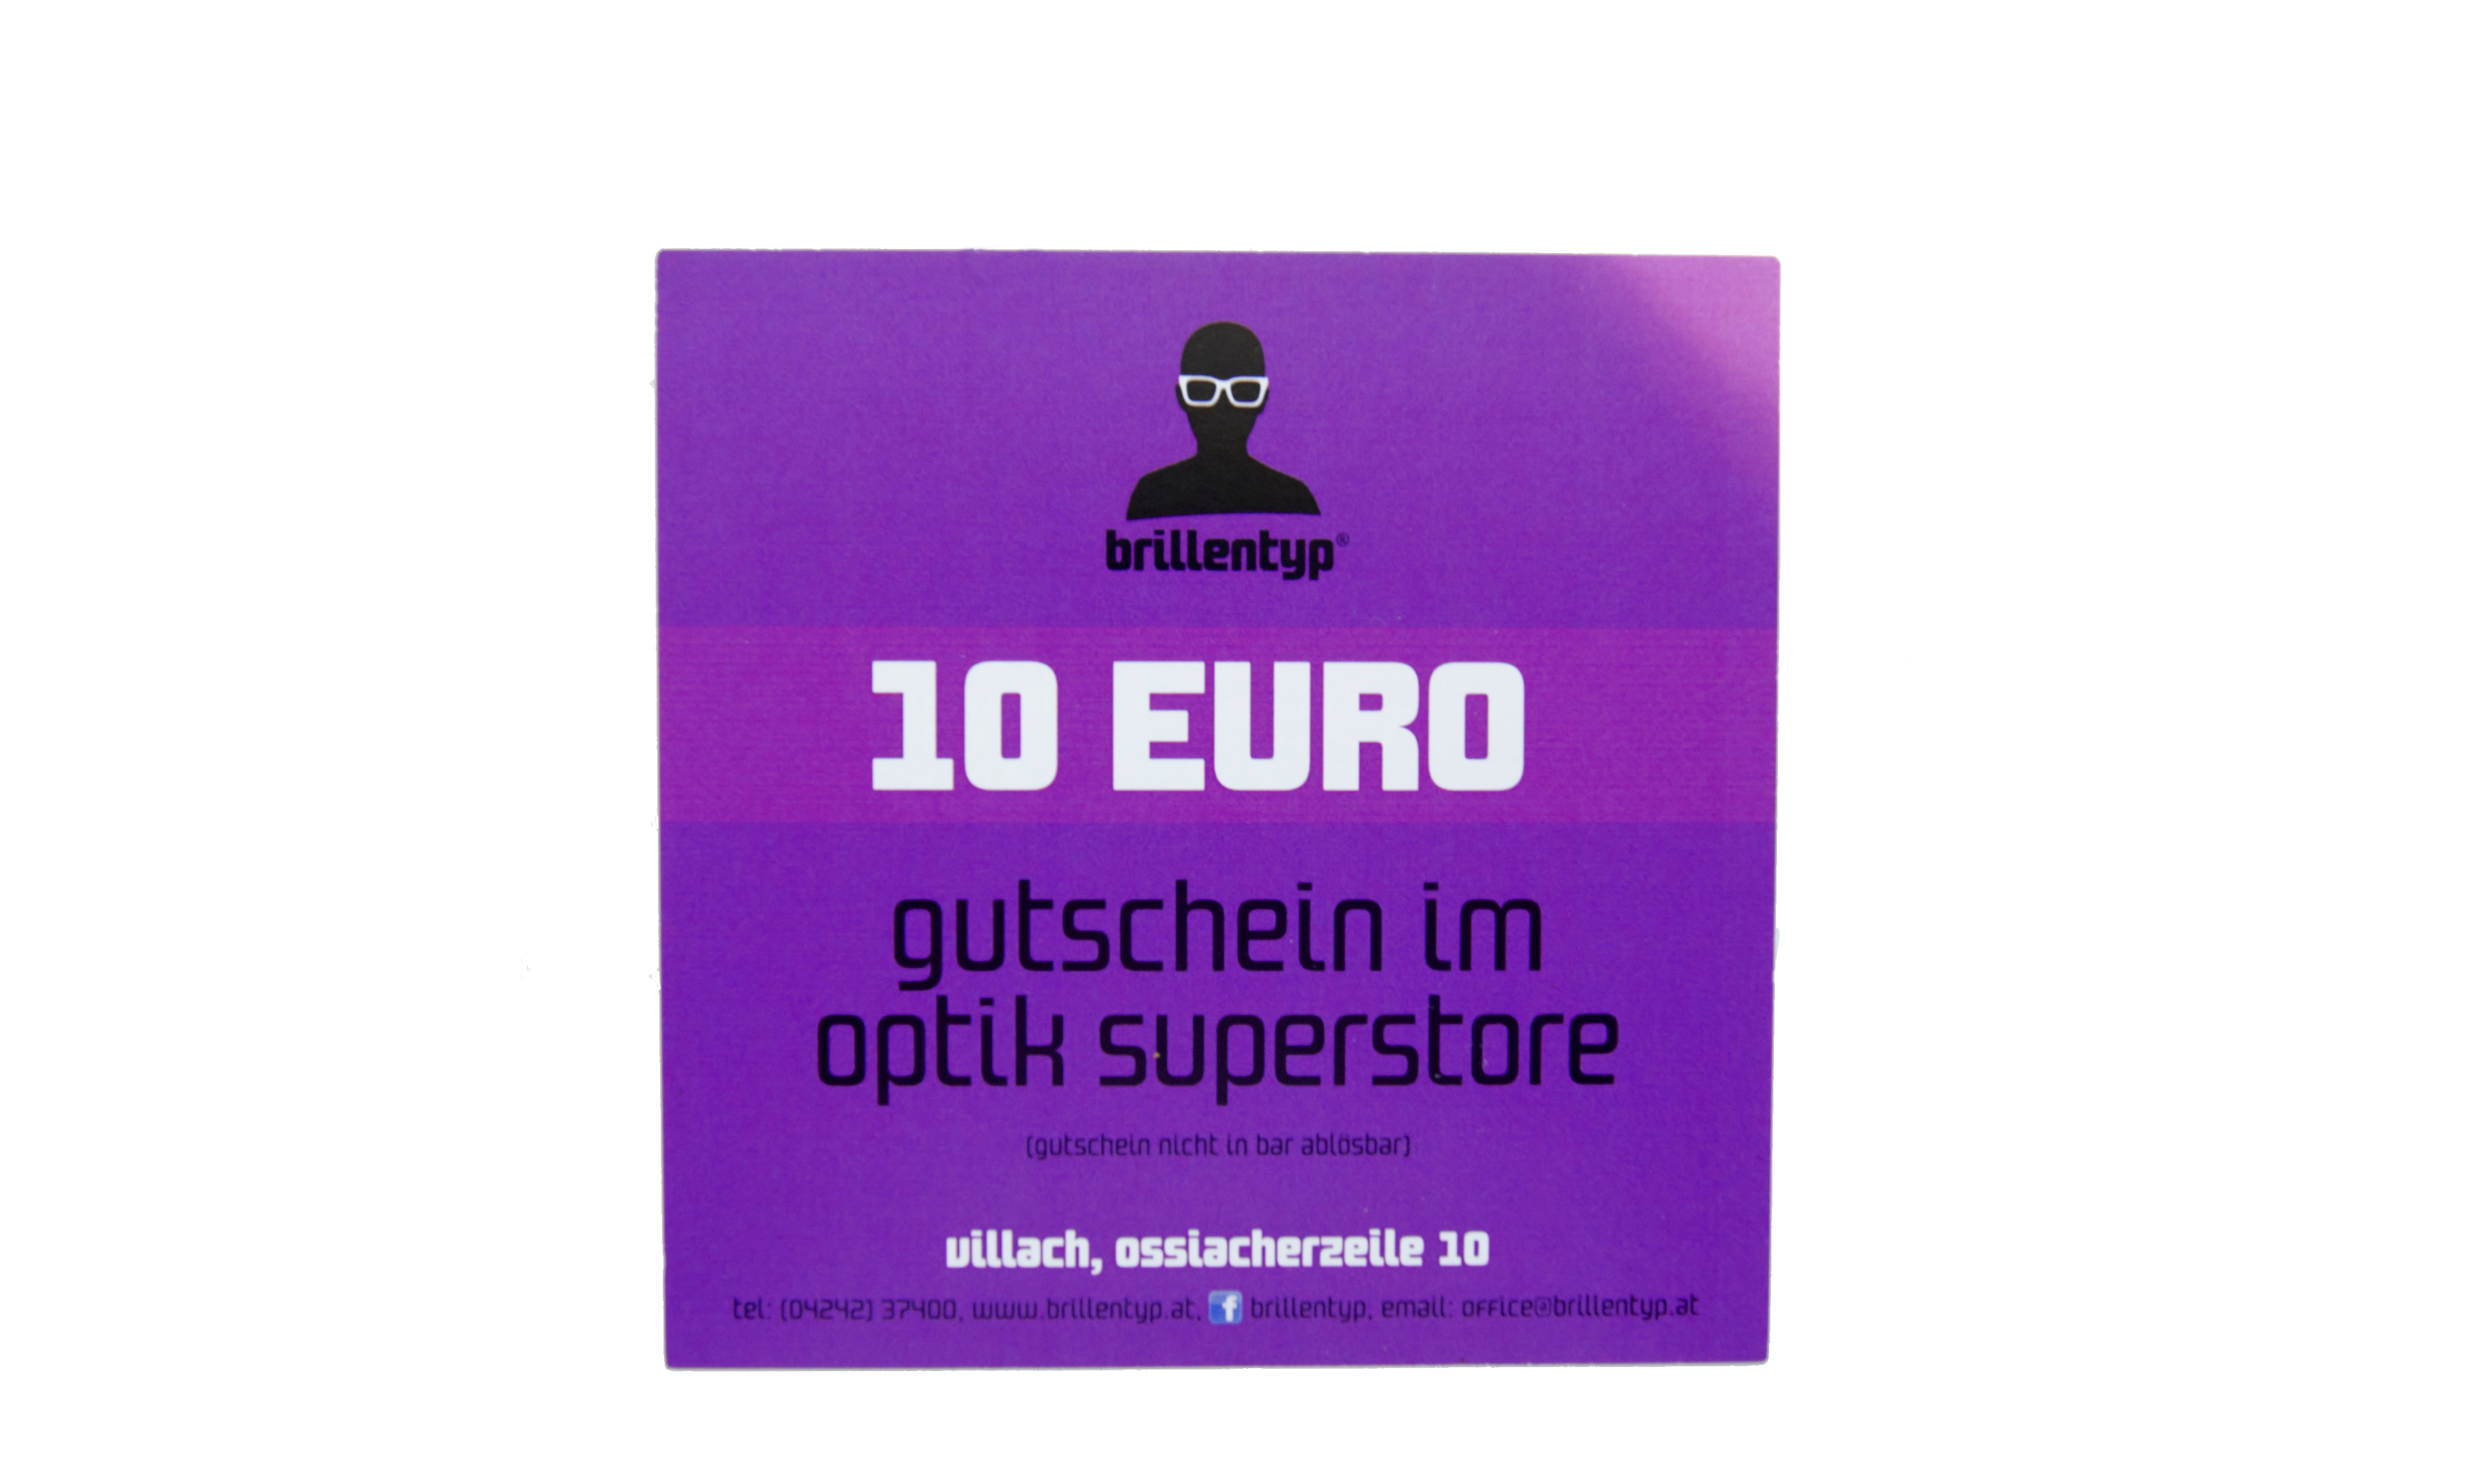 10€ Gutschein